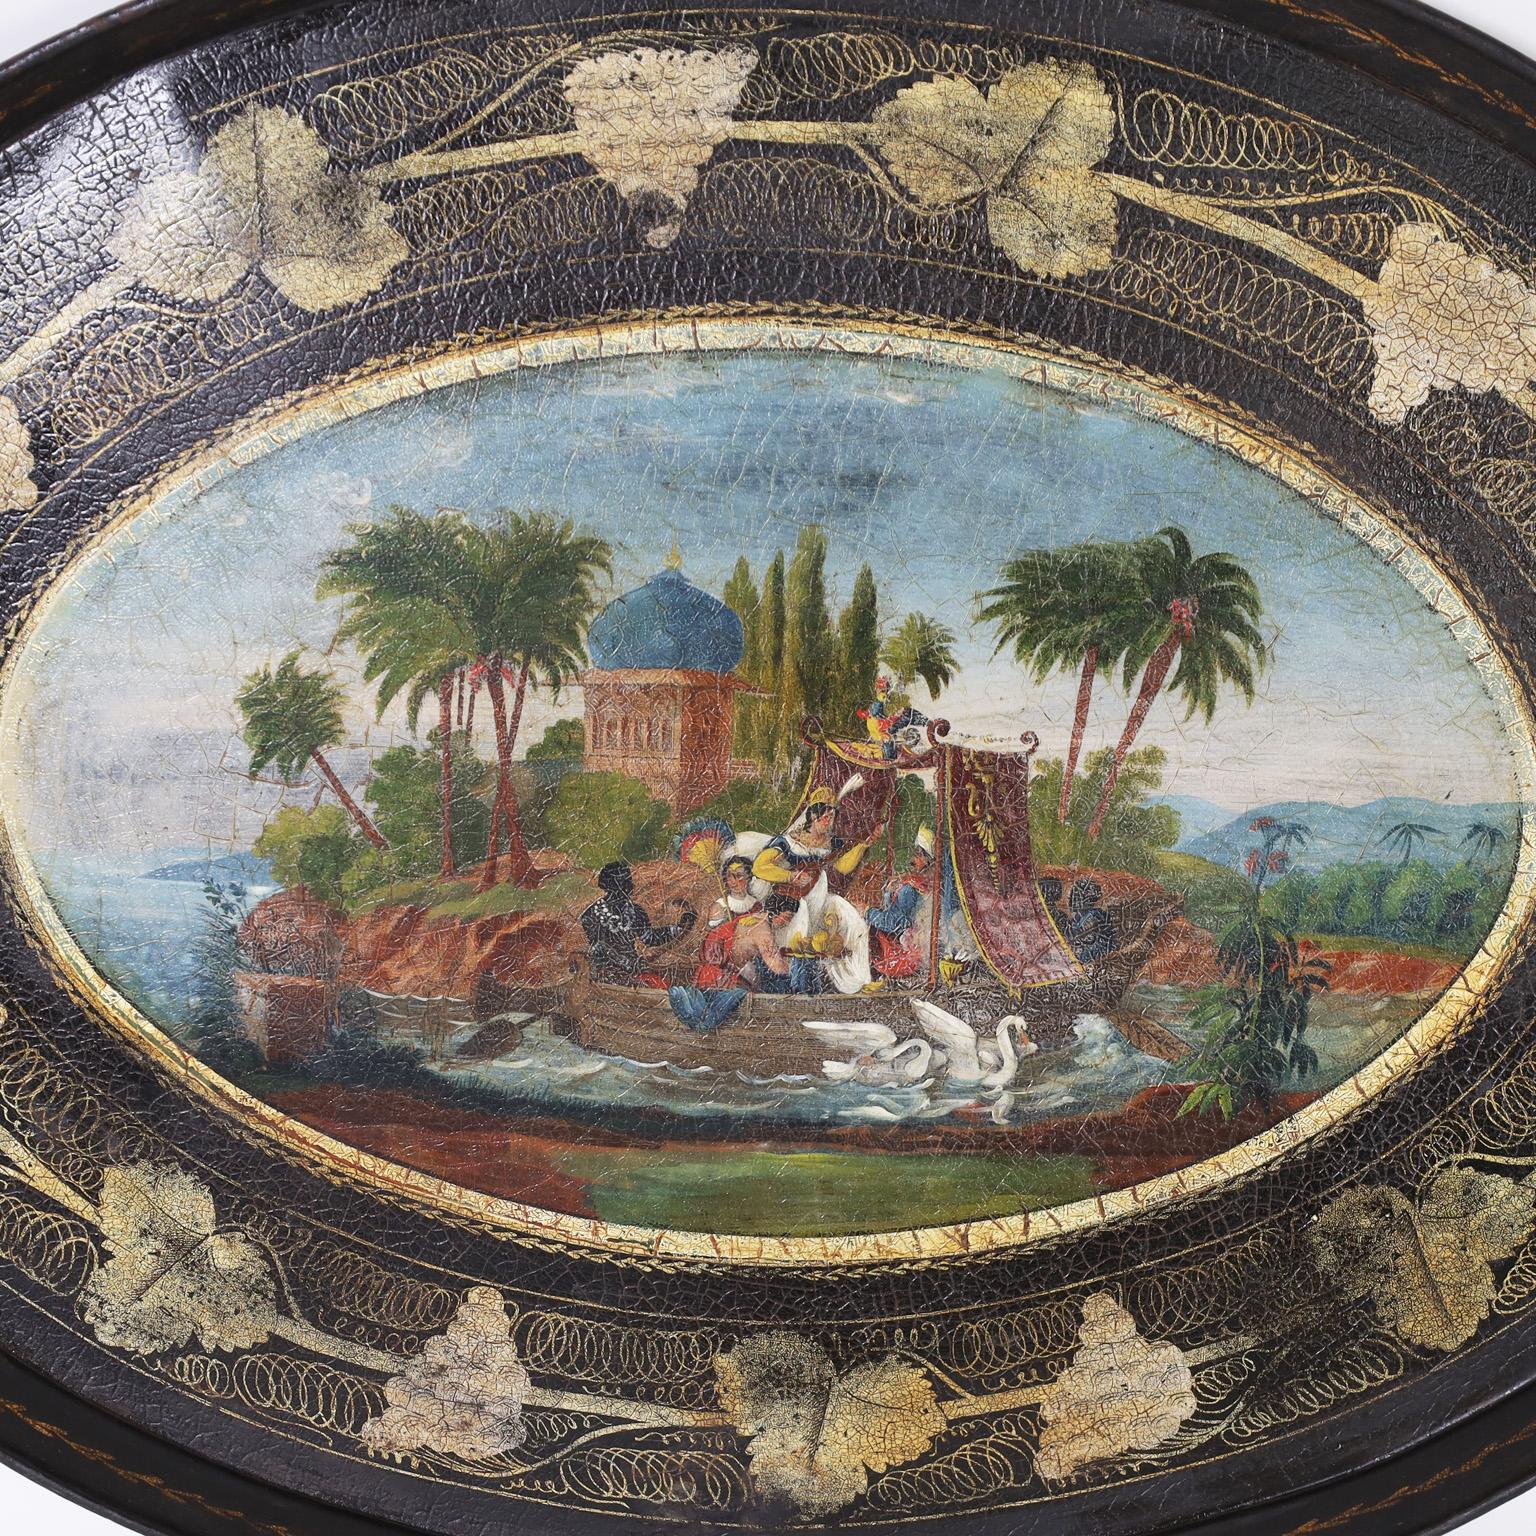 Ovales englisches Tablett aus dem 19. Jahrhundert mit zwei ausgeschnittenen Griffen und einem farbenfrohen orientalischen Ölgemälde mit Figuren in einer Bootsarchitektur und einer tropischen Umgebung in einem Rahmen aus Blättern und Ranken. 